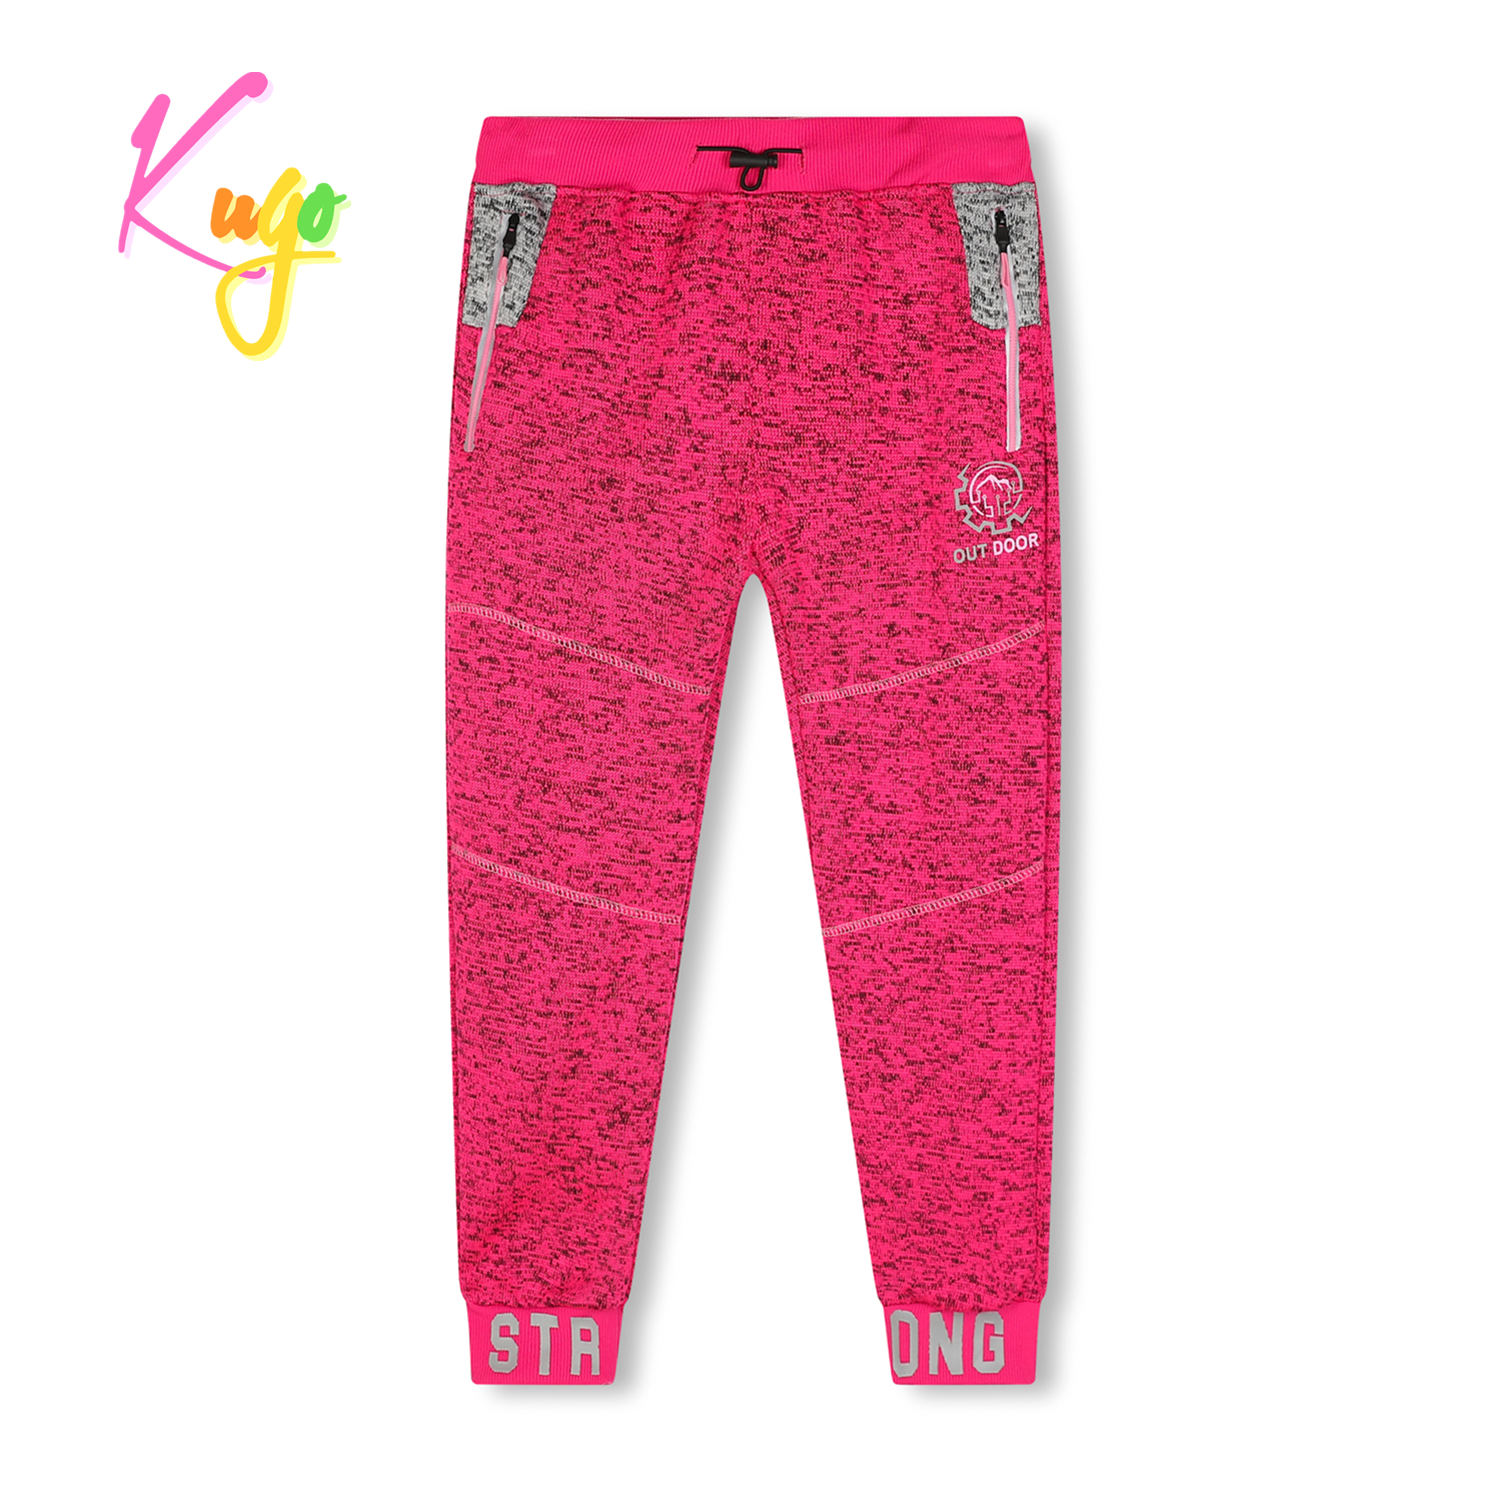 Dívčí outdoorové tepláky - KUGO HT1928, růžová Barva: Růžová, Velikost: 116